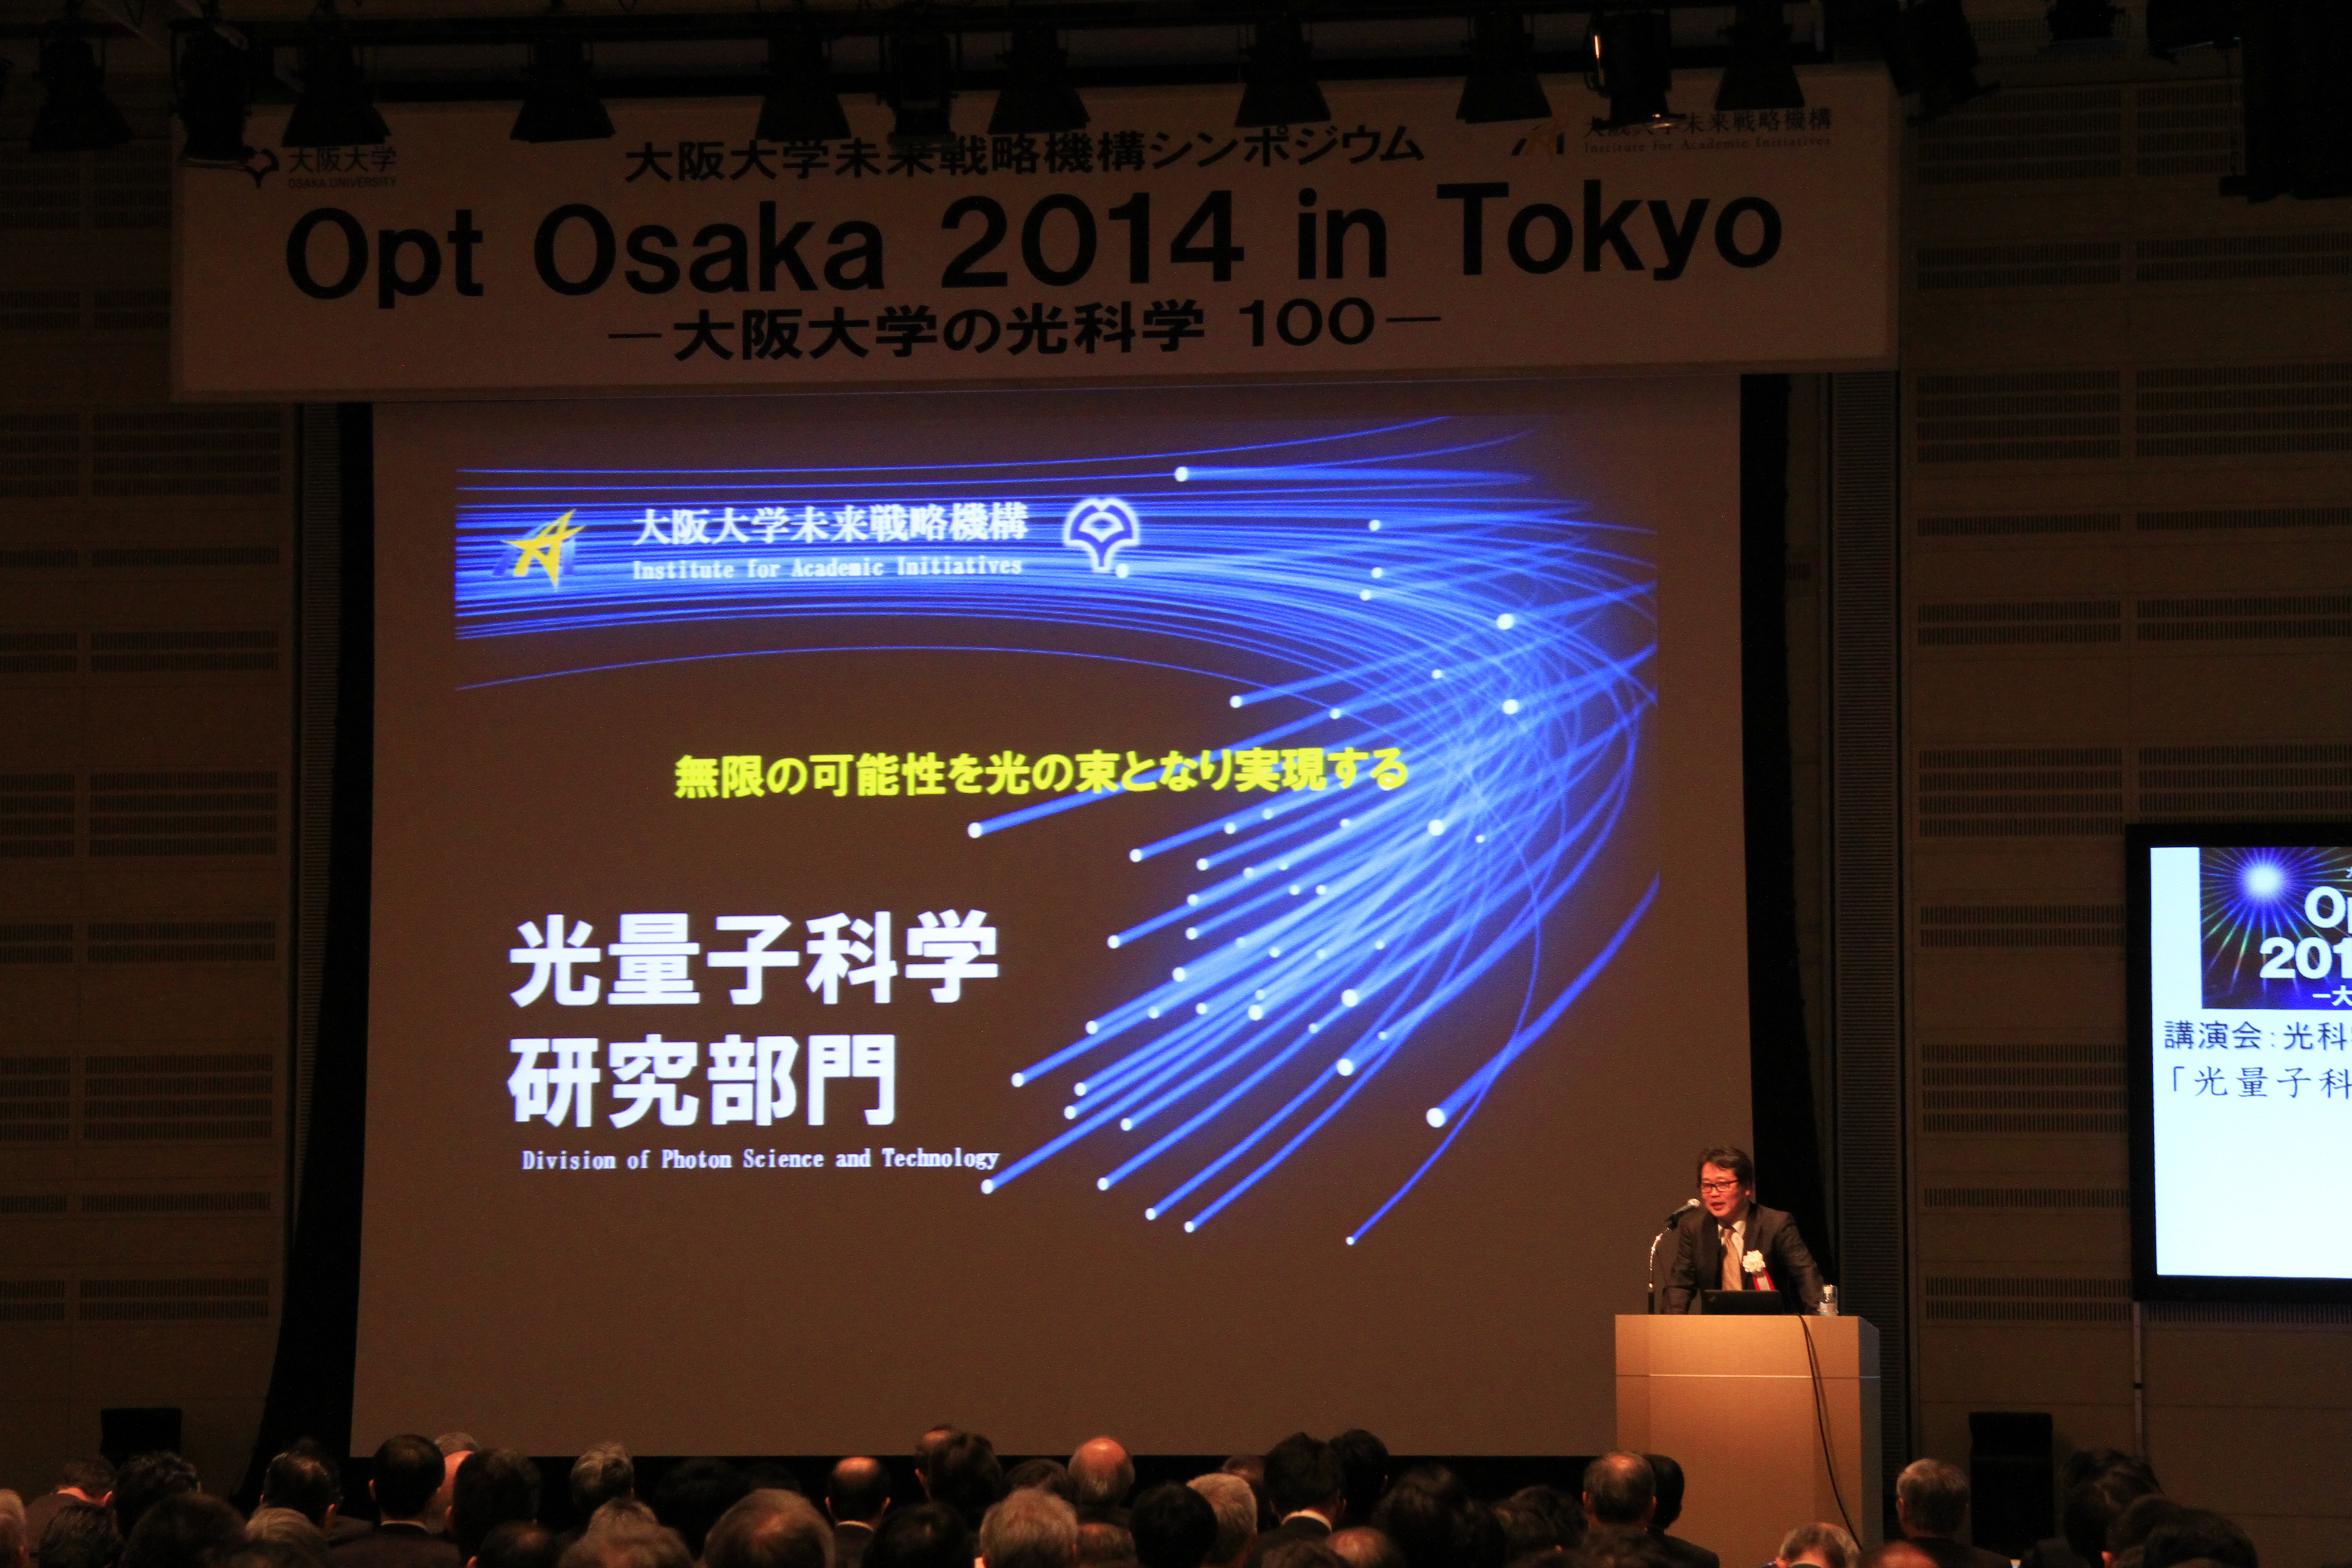 大阪大学未来戦略機構シンポジウム「Opt Osaka 2014 in Tokyo－大阪大学の光科学100－」を開催しました